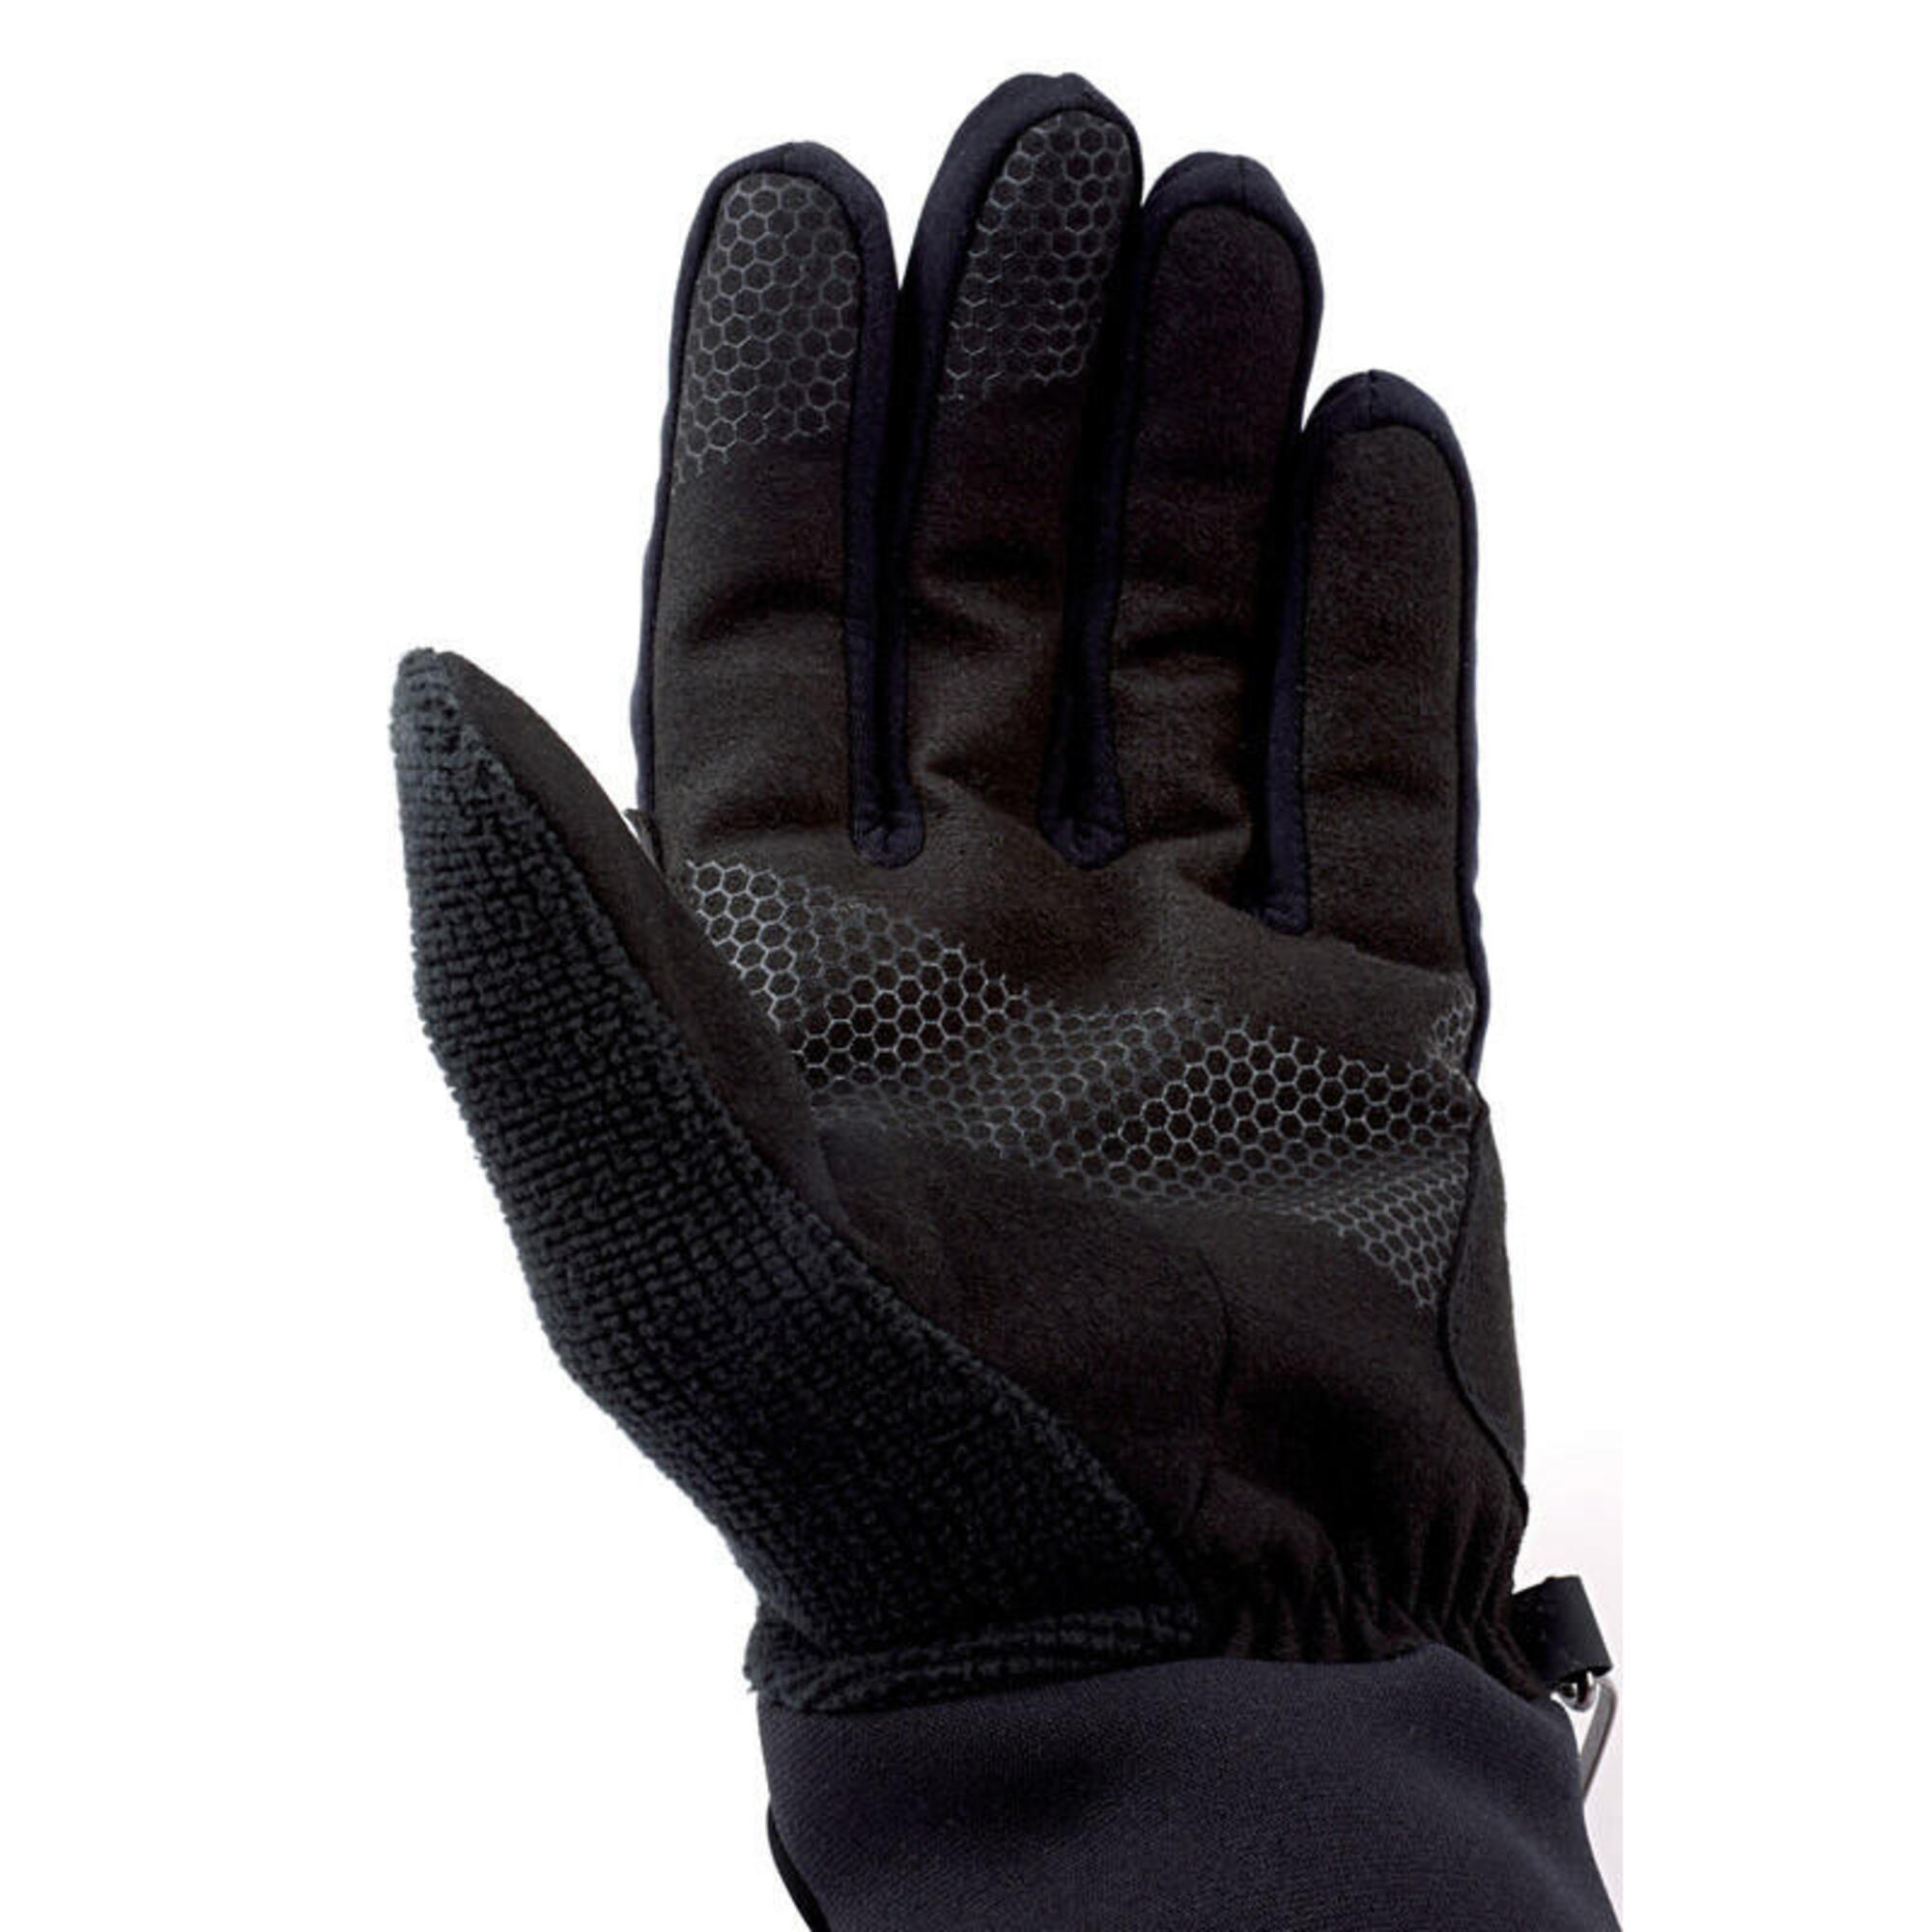 Guante fino y transpirable para deportes de invierno - Nordic Exploration Gloves